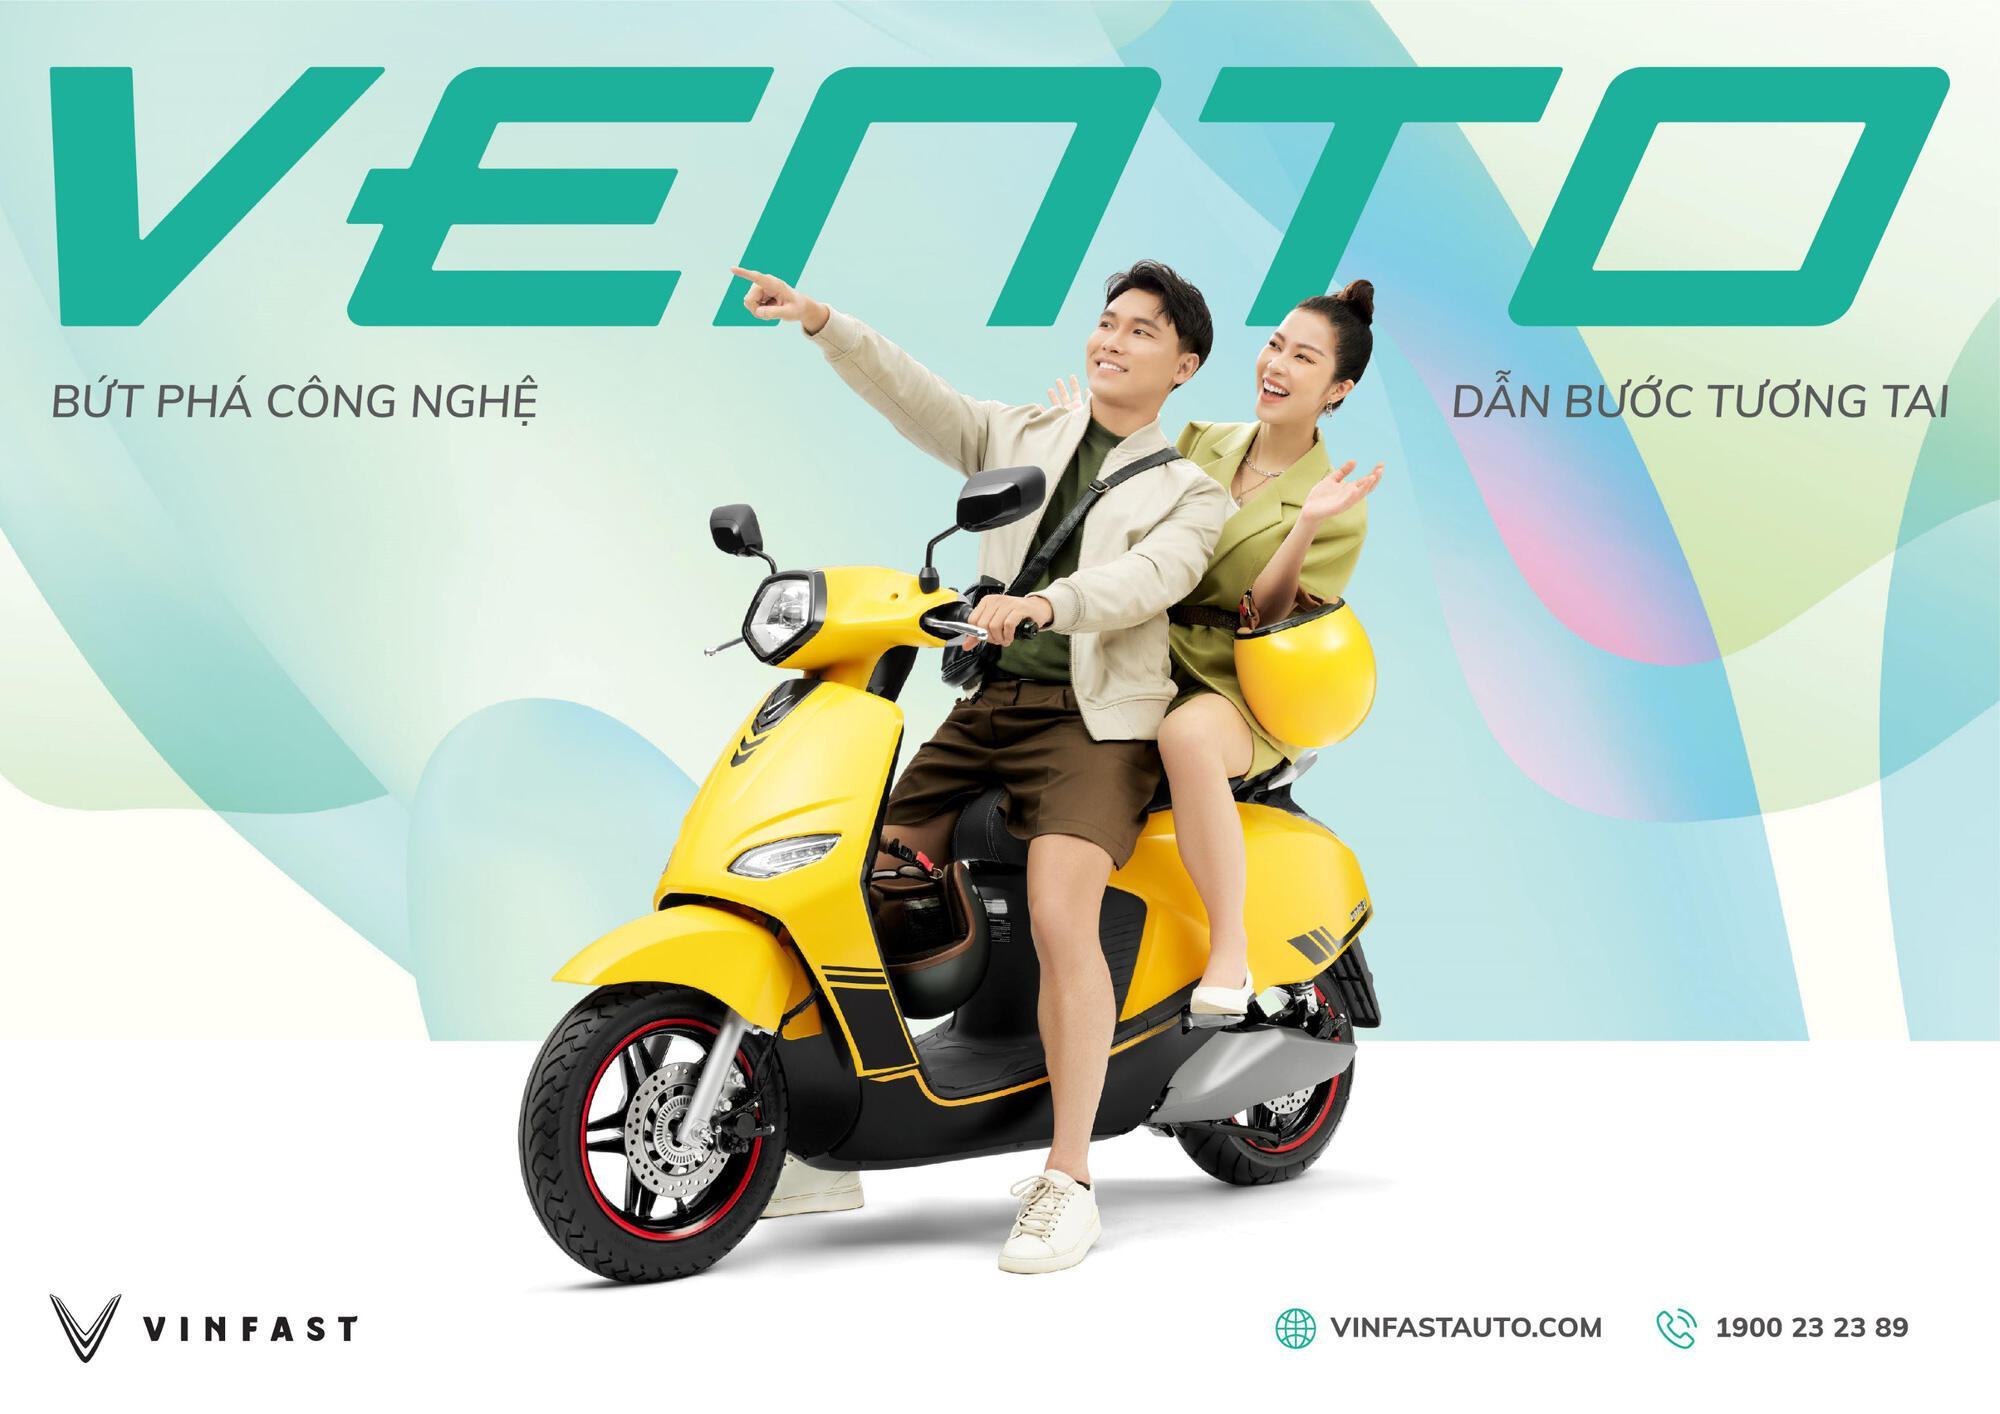 VinFast ra mắt xe máy điện Vento hoàn toàn mới, tốc độ tối đa 80km/h - Ảnh 1.